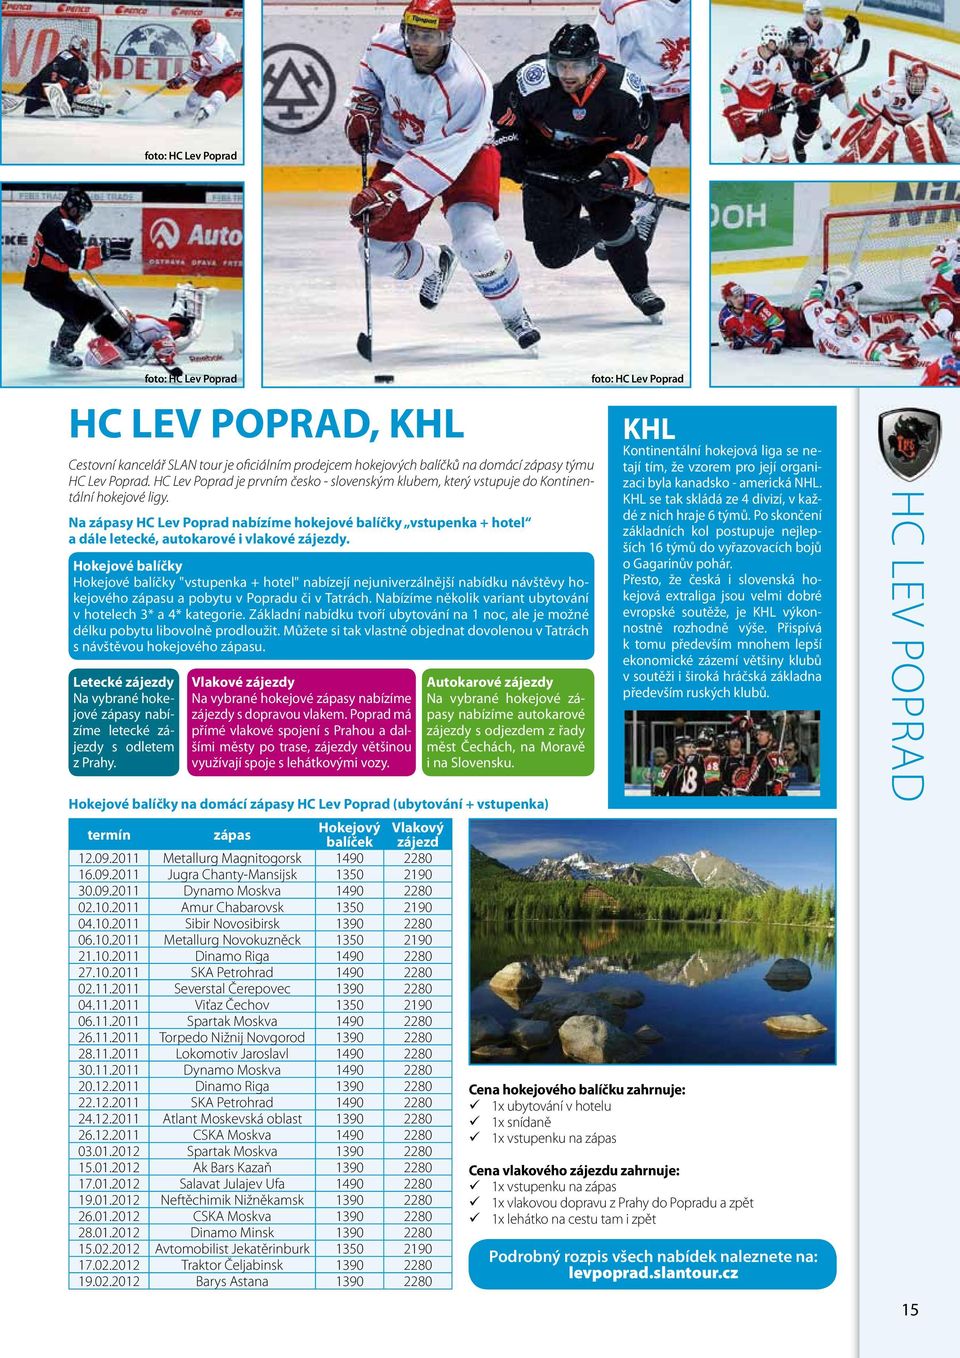 Na zápasy HC Lev Poprad nabízíme hokejové balíčky vstupenka + hotel a dále letecké, autokarové i vlakové zájezdy. Letecké zájezdy Na vybrané hokejové zápasy nabízíme letecké zájezdy s odletem z Prahy.